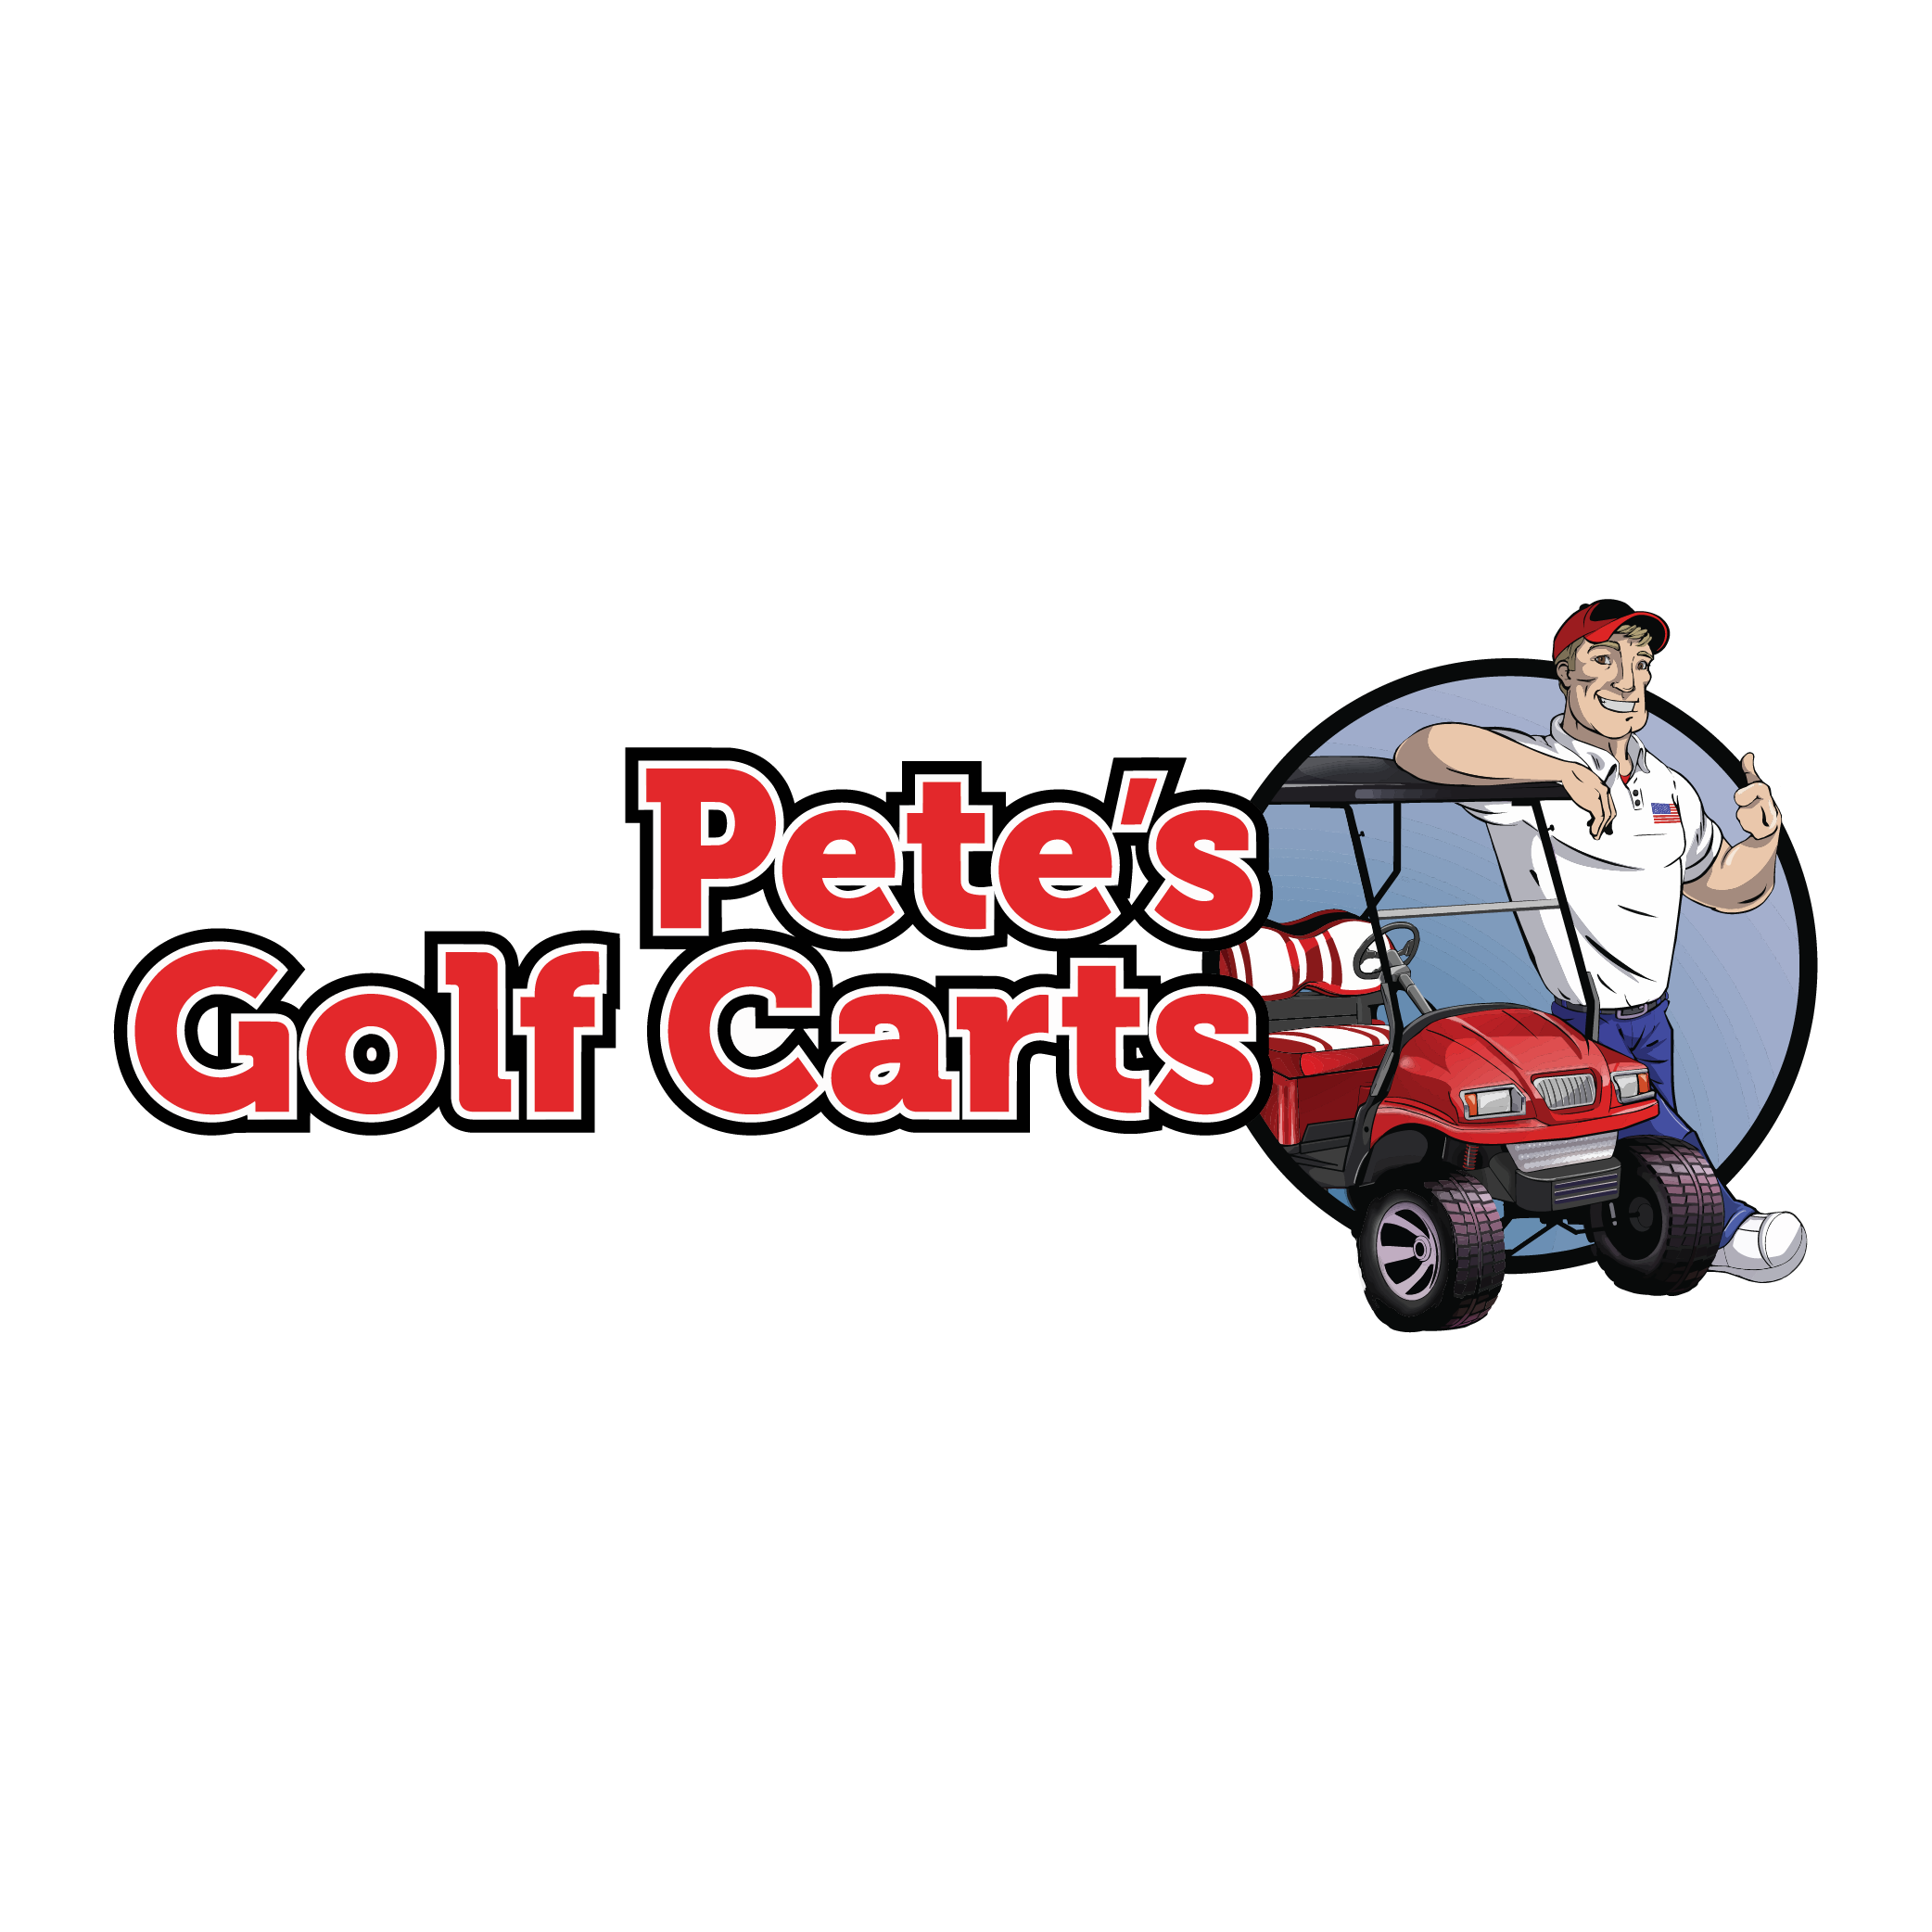 Pete's Golf Carts